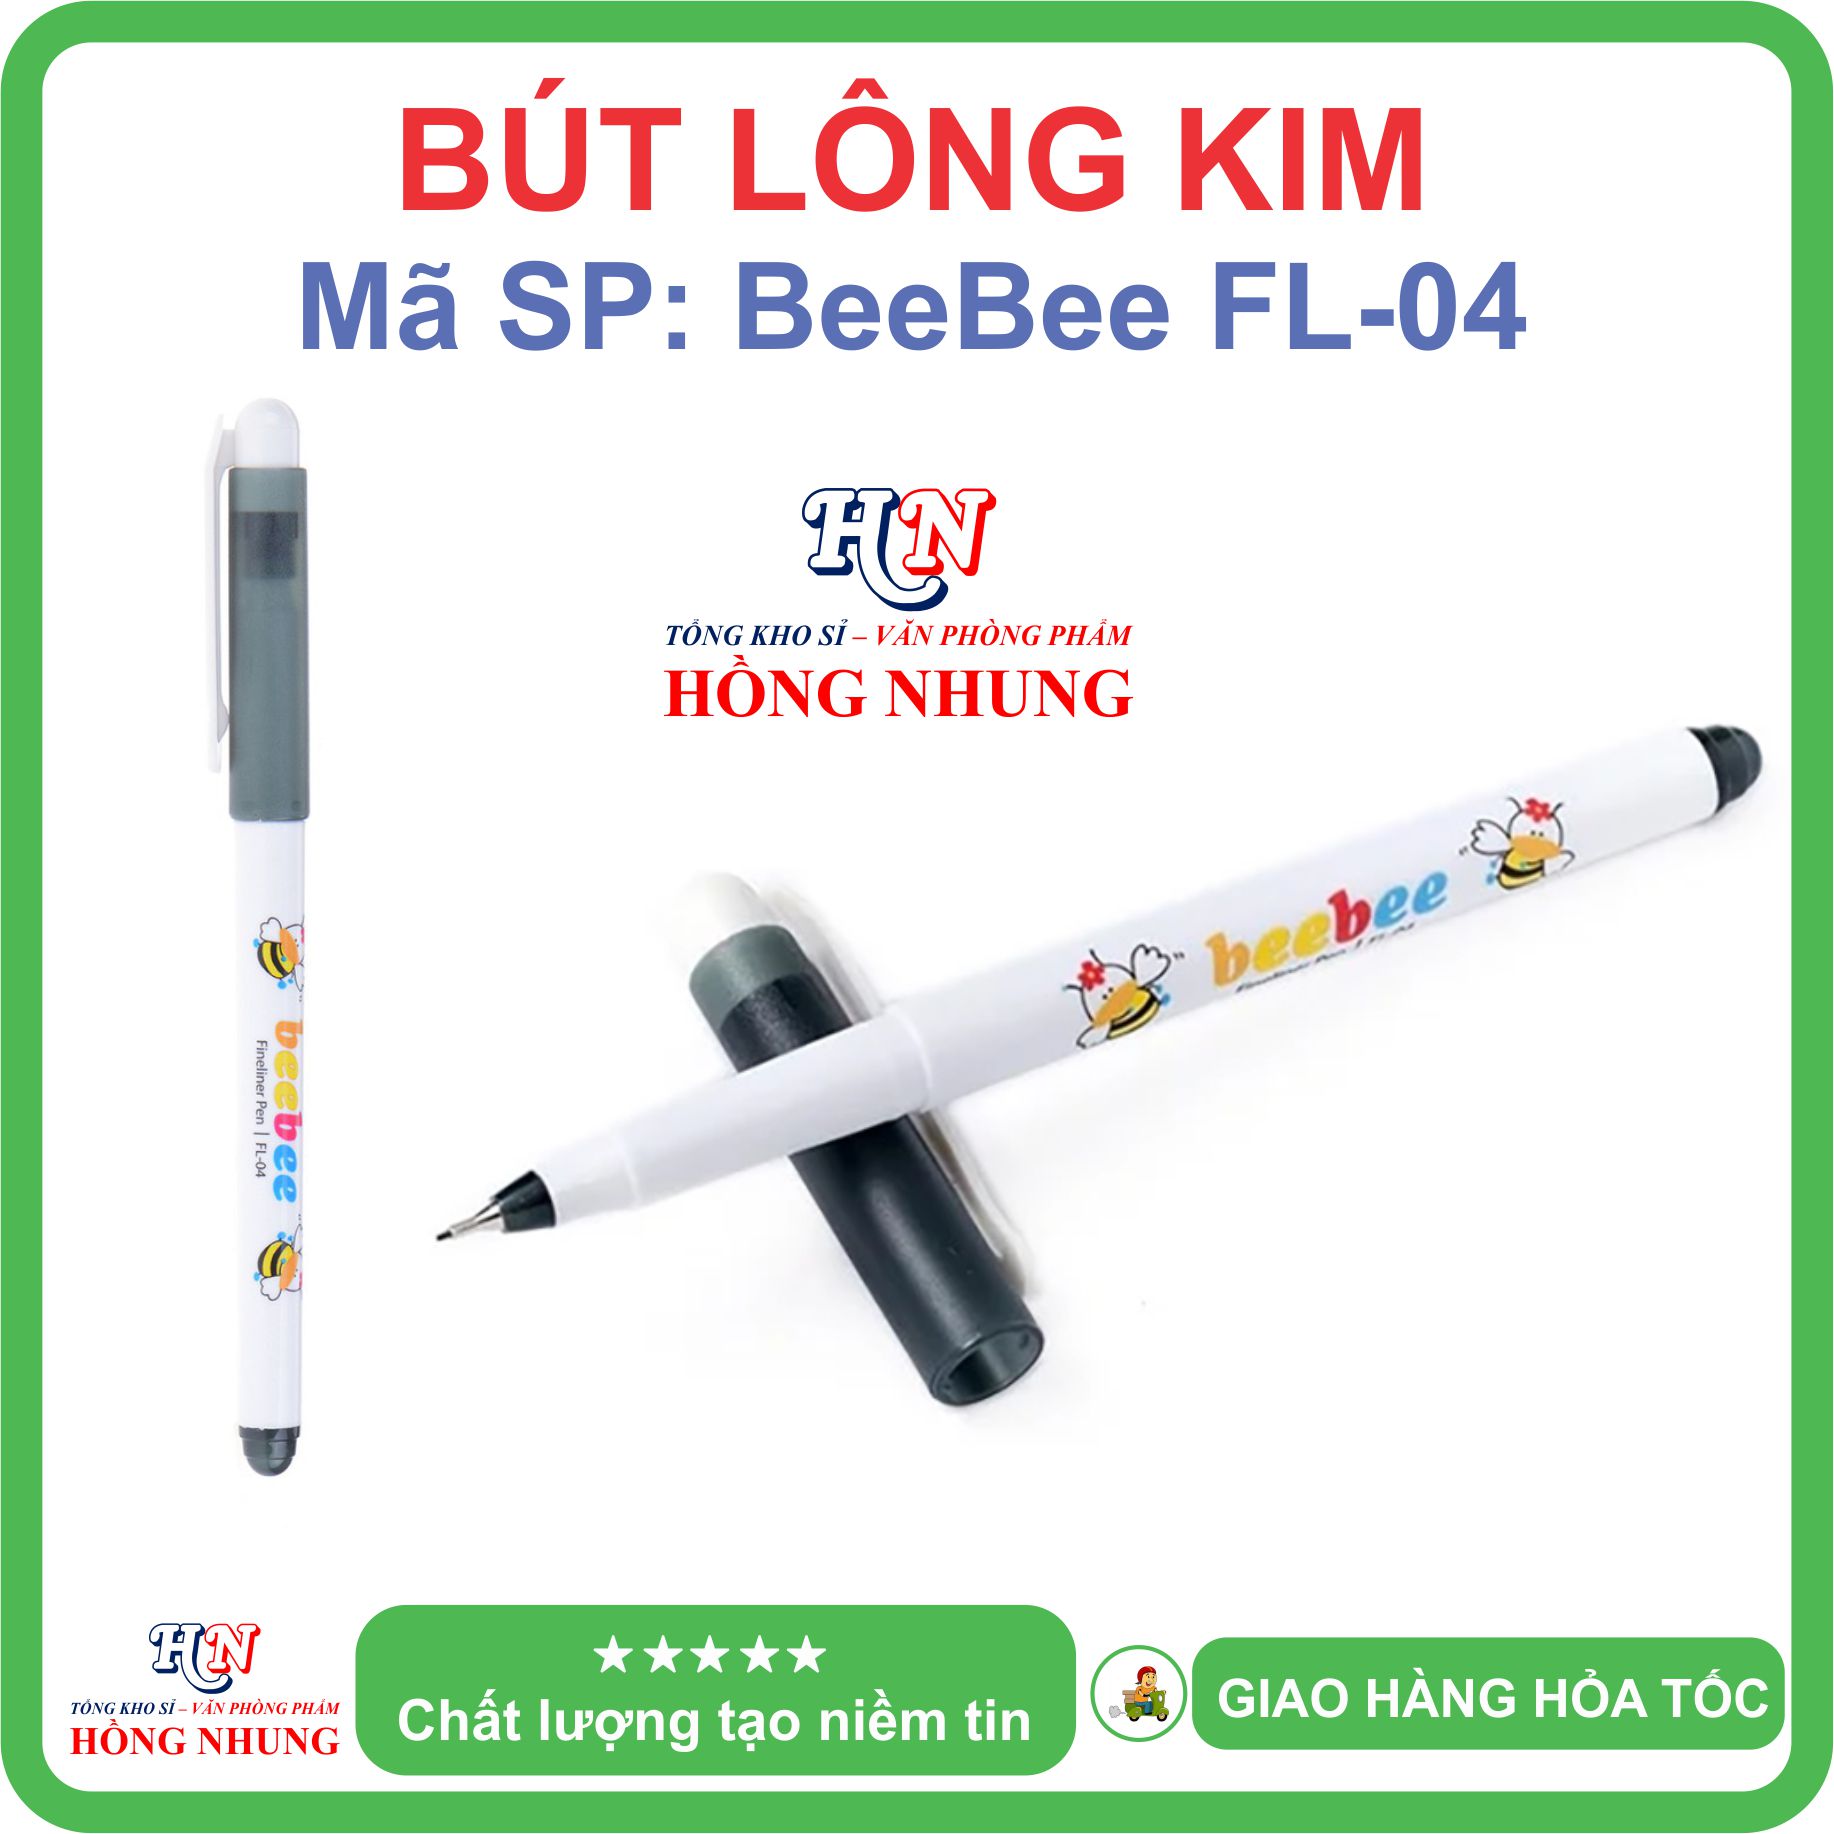 [SALE] Bút lông kim con ong Beebee FL-04, Bút Thiên Long, An Toàn, Không Độc Hại, Kiểu dáng dễ thương